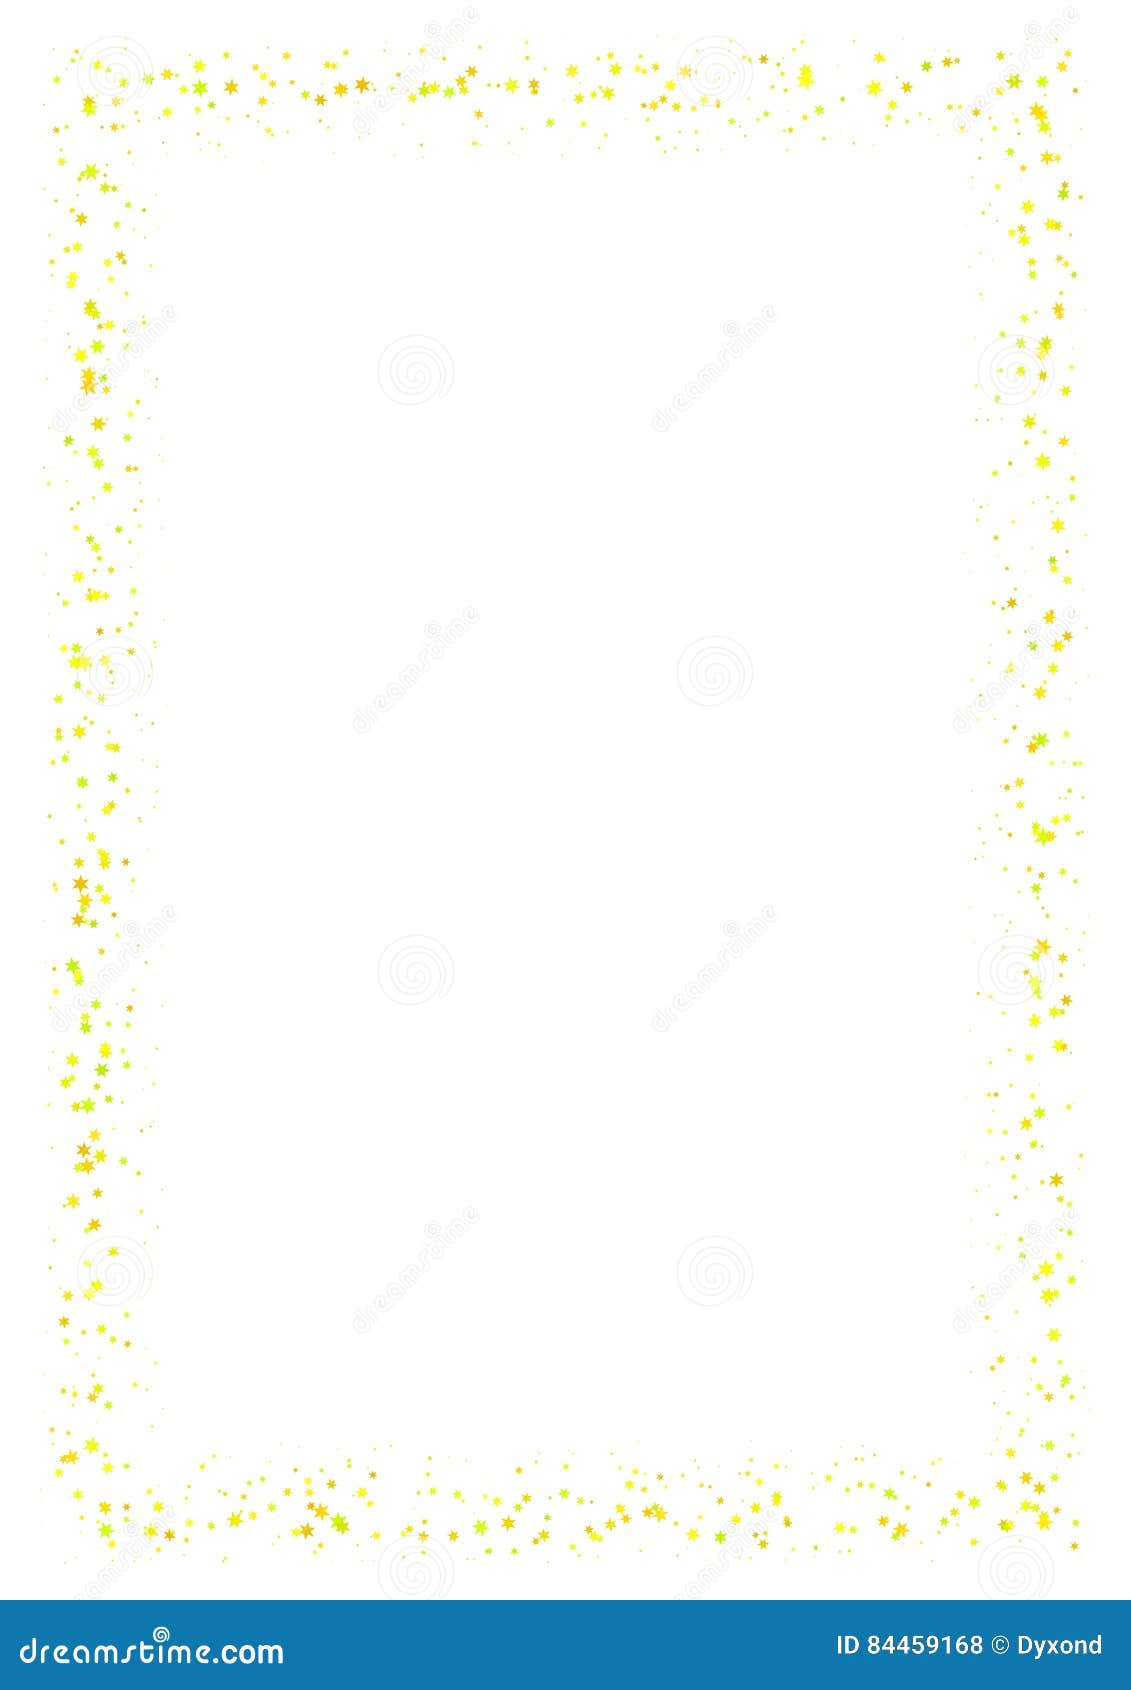 Khung trừu tượng được làm từ những ngôi sao nhỏ màu vàng trên nền trắng kích thước A4, tạo nên một thiết kế độc đáo và thu hút. Đây chắc chắn sẽ là một lựa chọn tuyệt vời để tăng thêm tổng quan cho bức tranh của bạn.